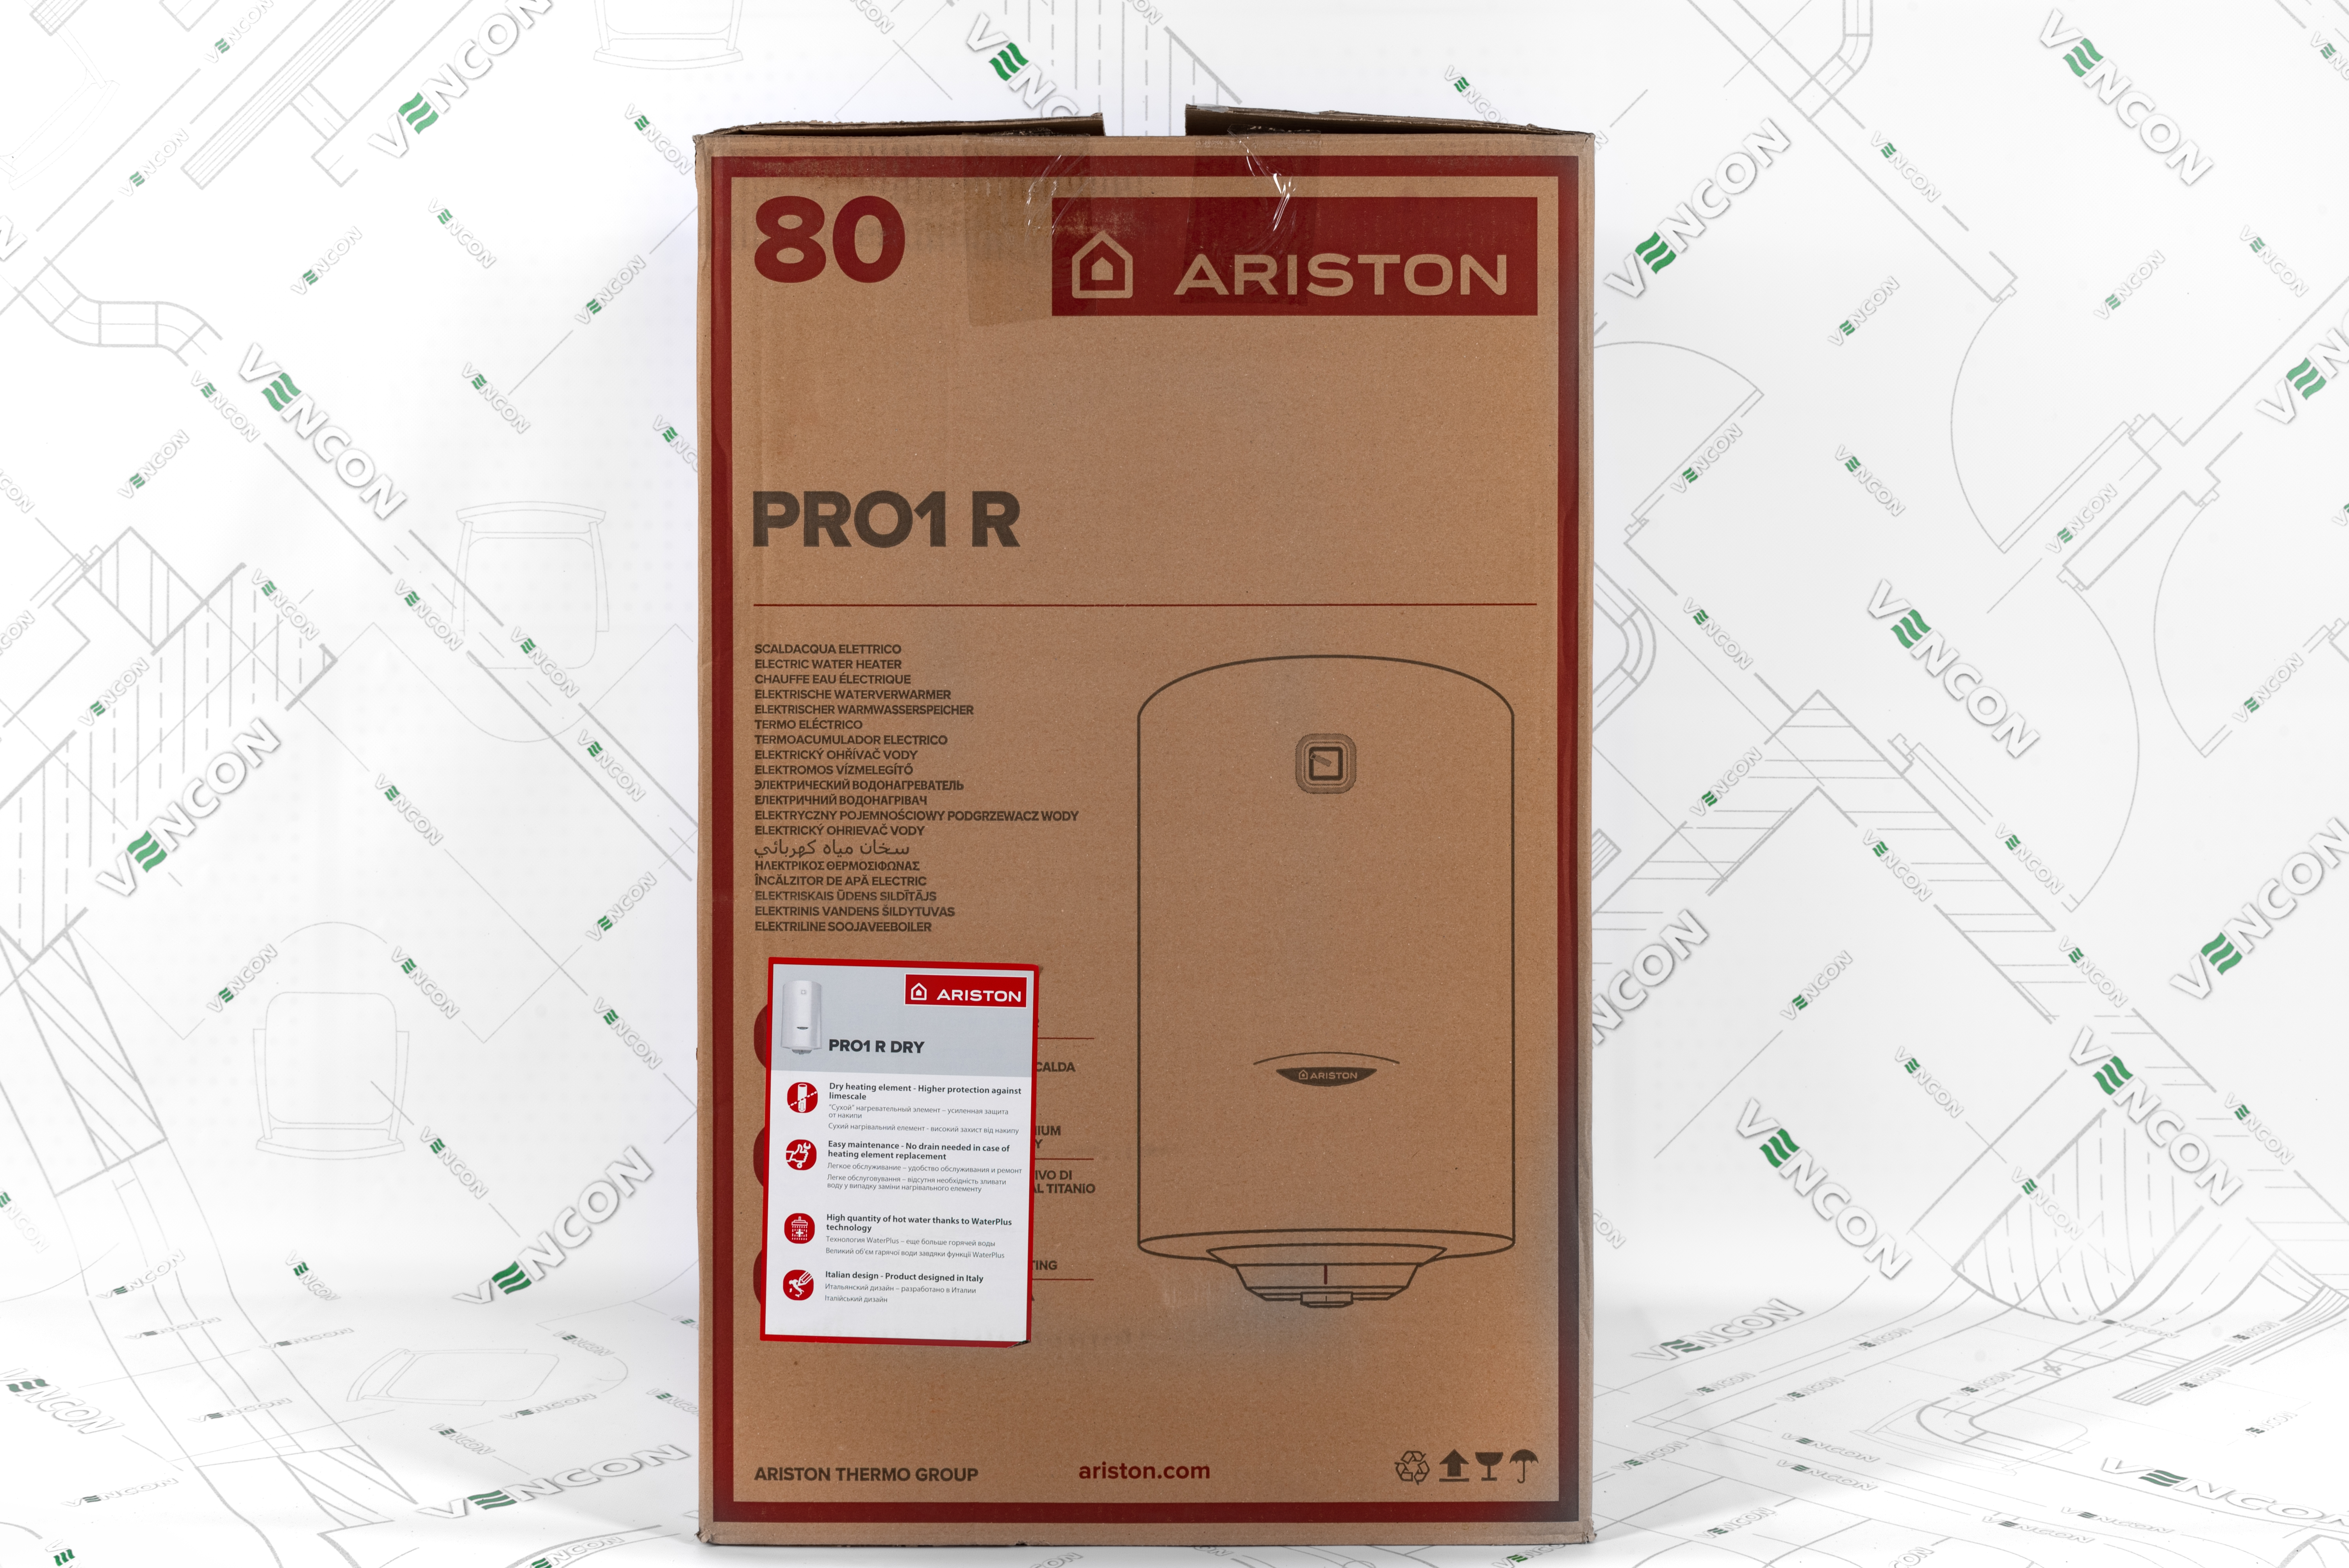 Ariston PRO1 R 80 V 1,5К PL Dry в магазині - фото 17